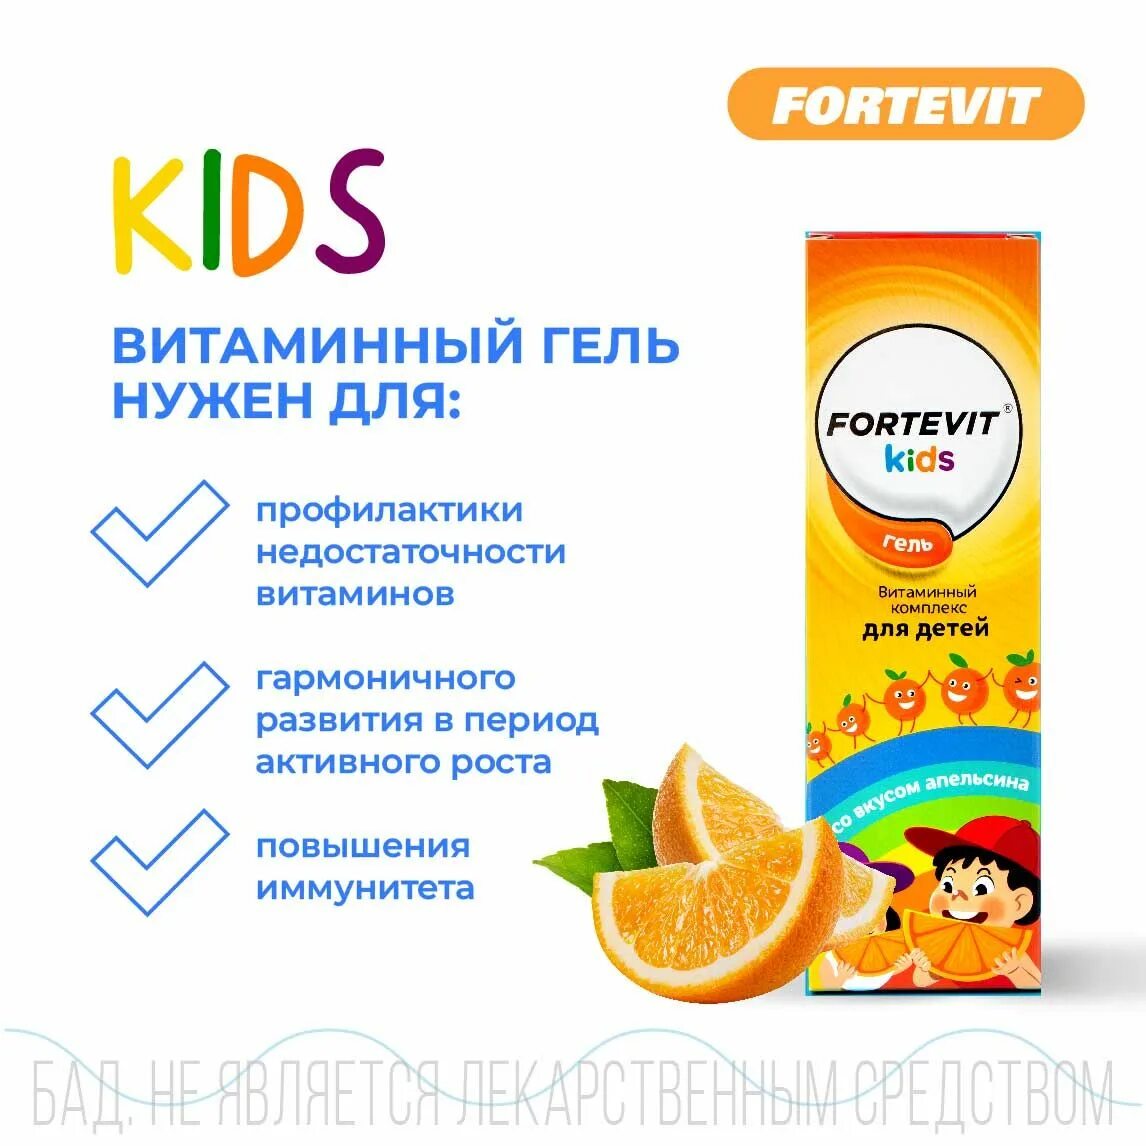 Витамин д3 фортевит. Мирролла витагель вит.комплекс д/детей апельсин 100мл. Fortevit Kids витаминный комплекс гель. Витагель апельсин.